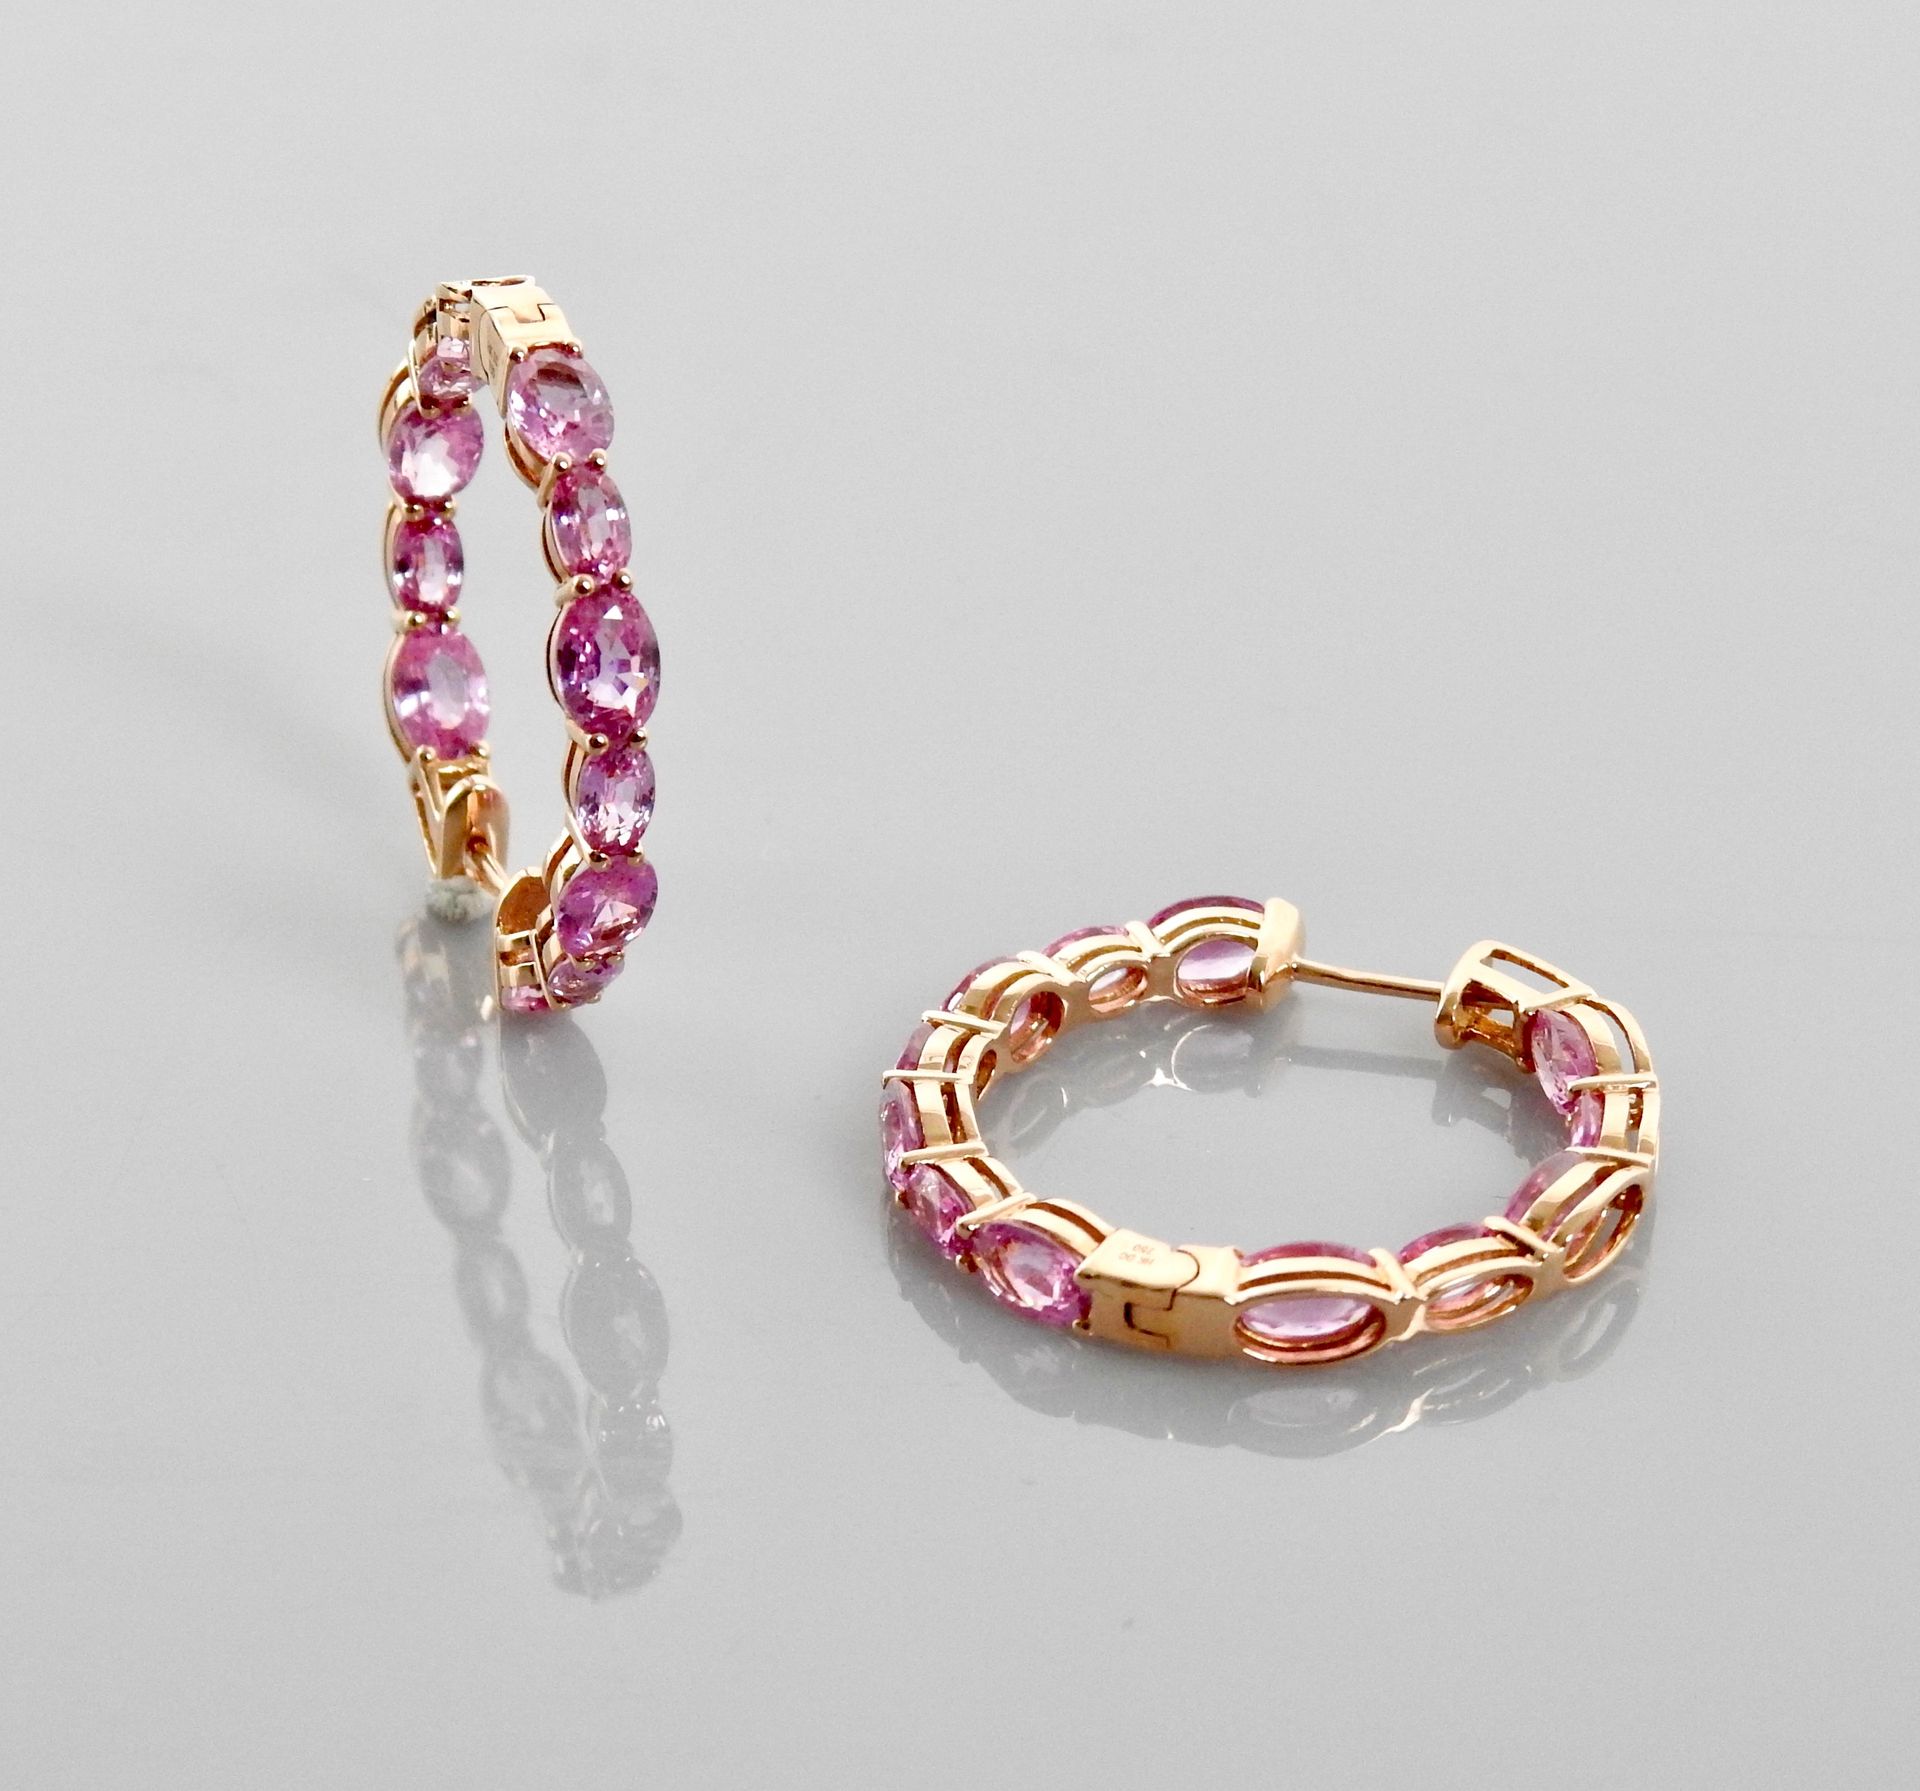 Null 粉红金环形耳环，750毫米，由粉红蓝宝石衬托，共约7克拉，直径3厘米，重量：9.5克。